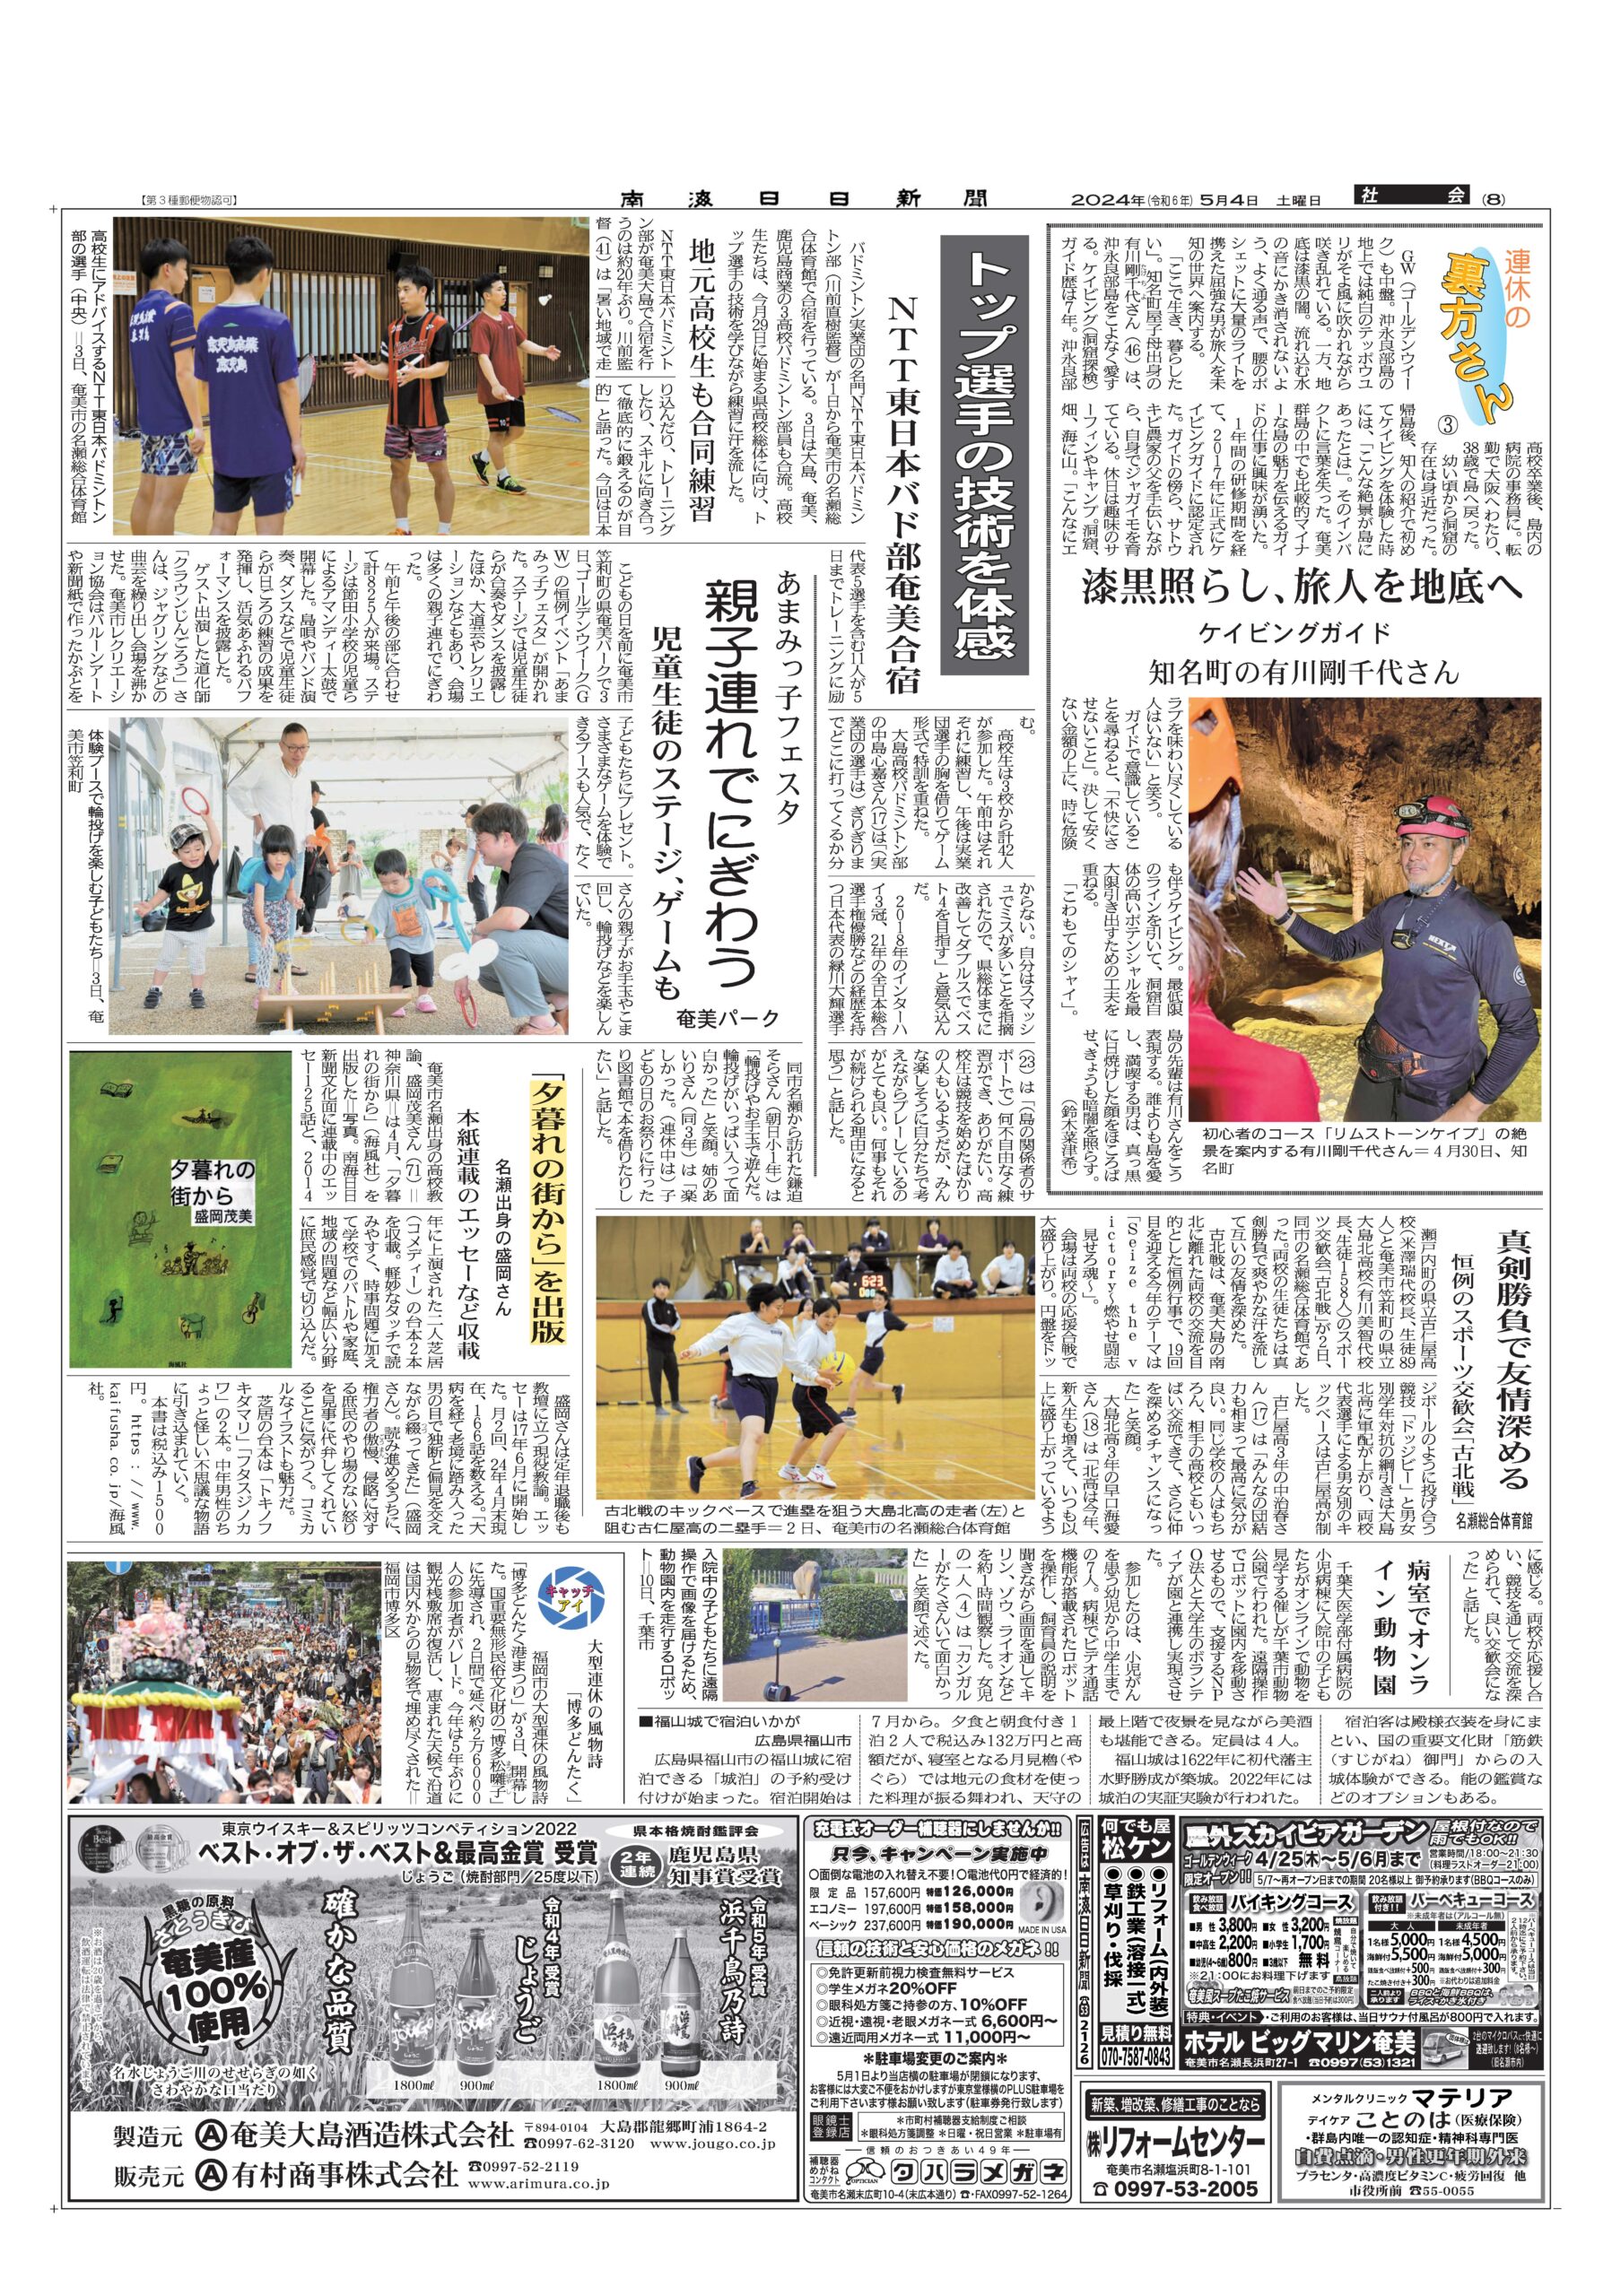 新刊『夕暮れの街から』が南海日日新聞で紹介されました!